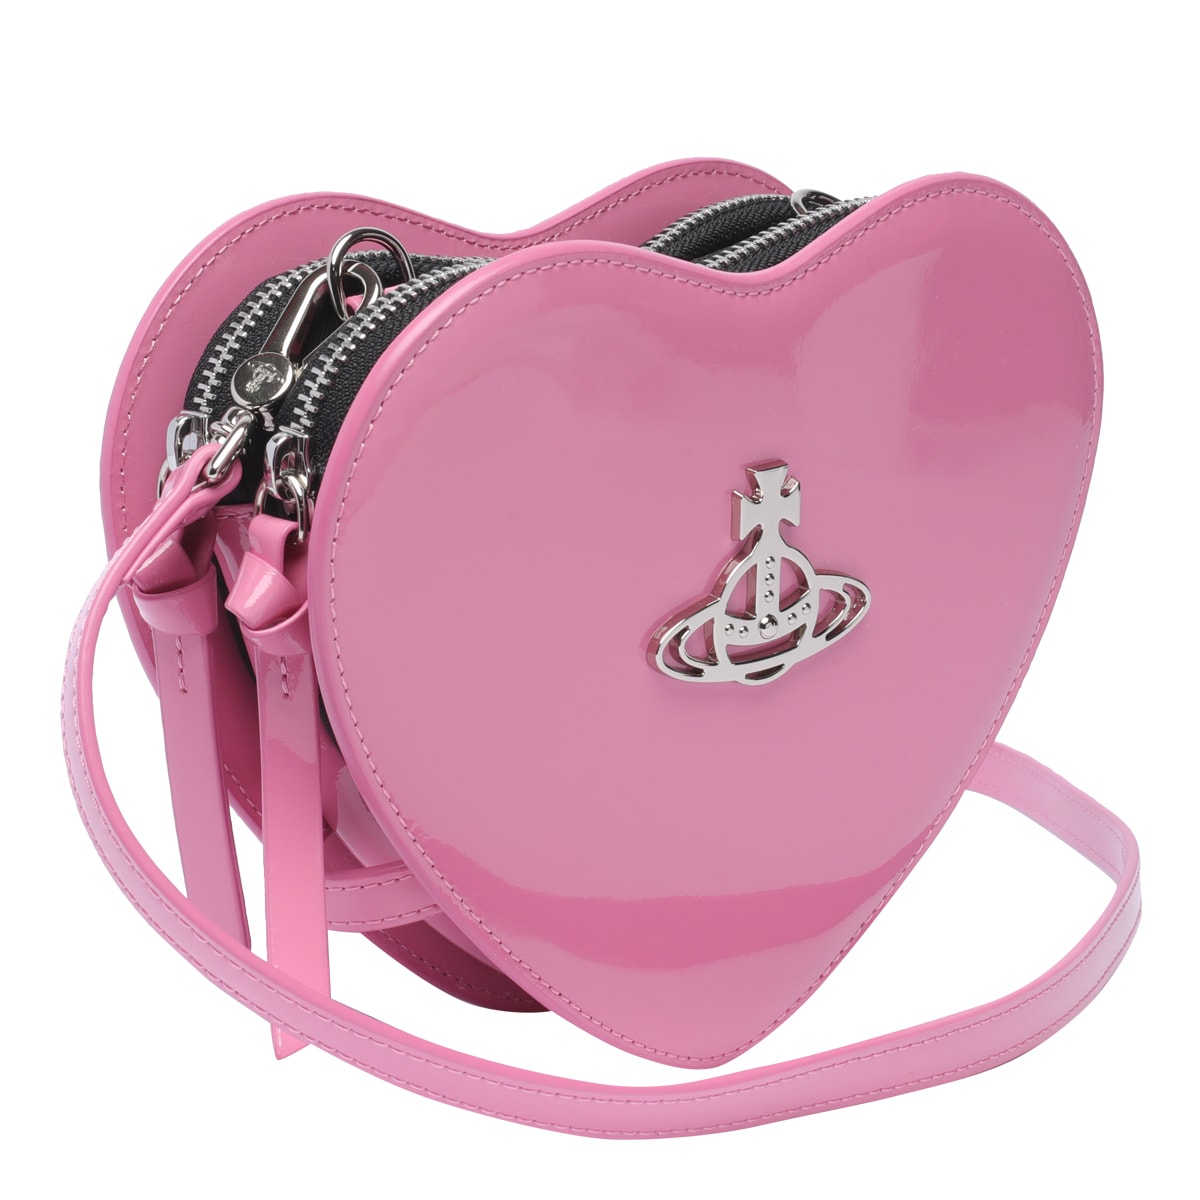 Vivienne Westwood Louise Heart Bag in Pink